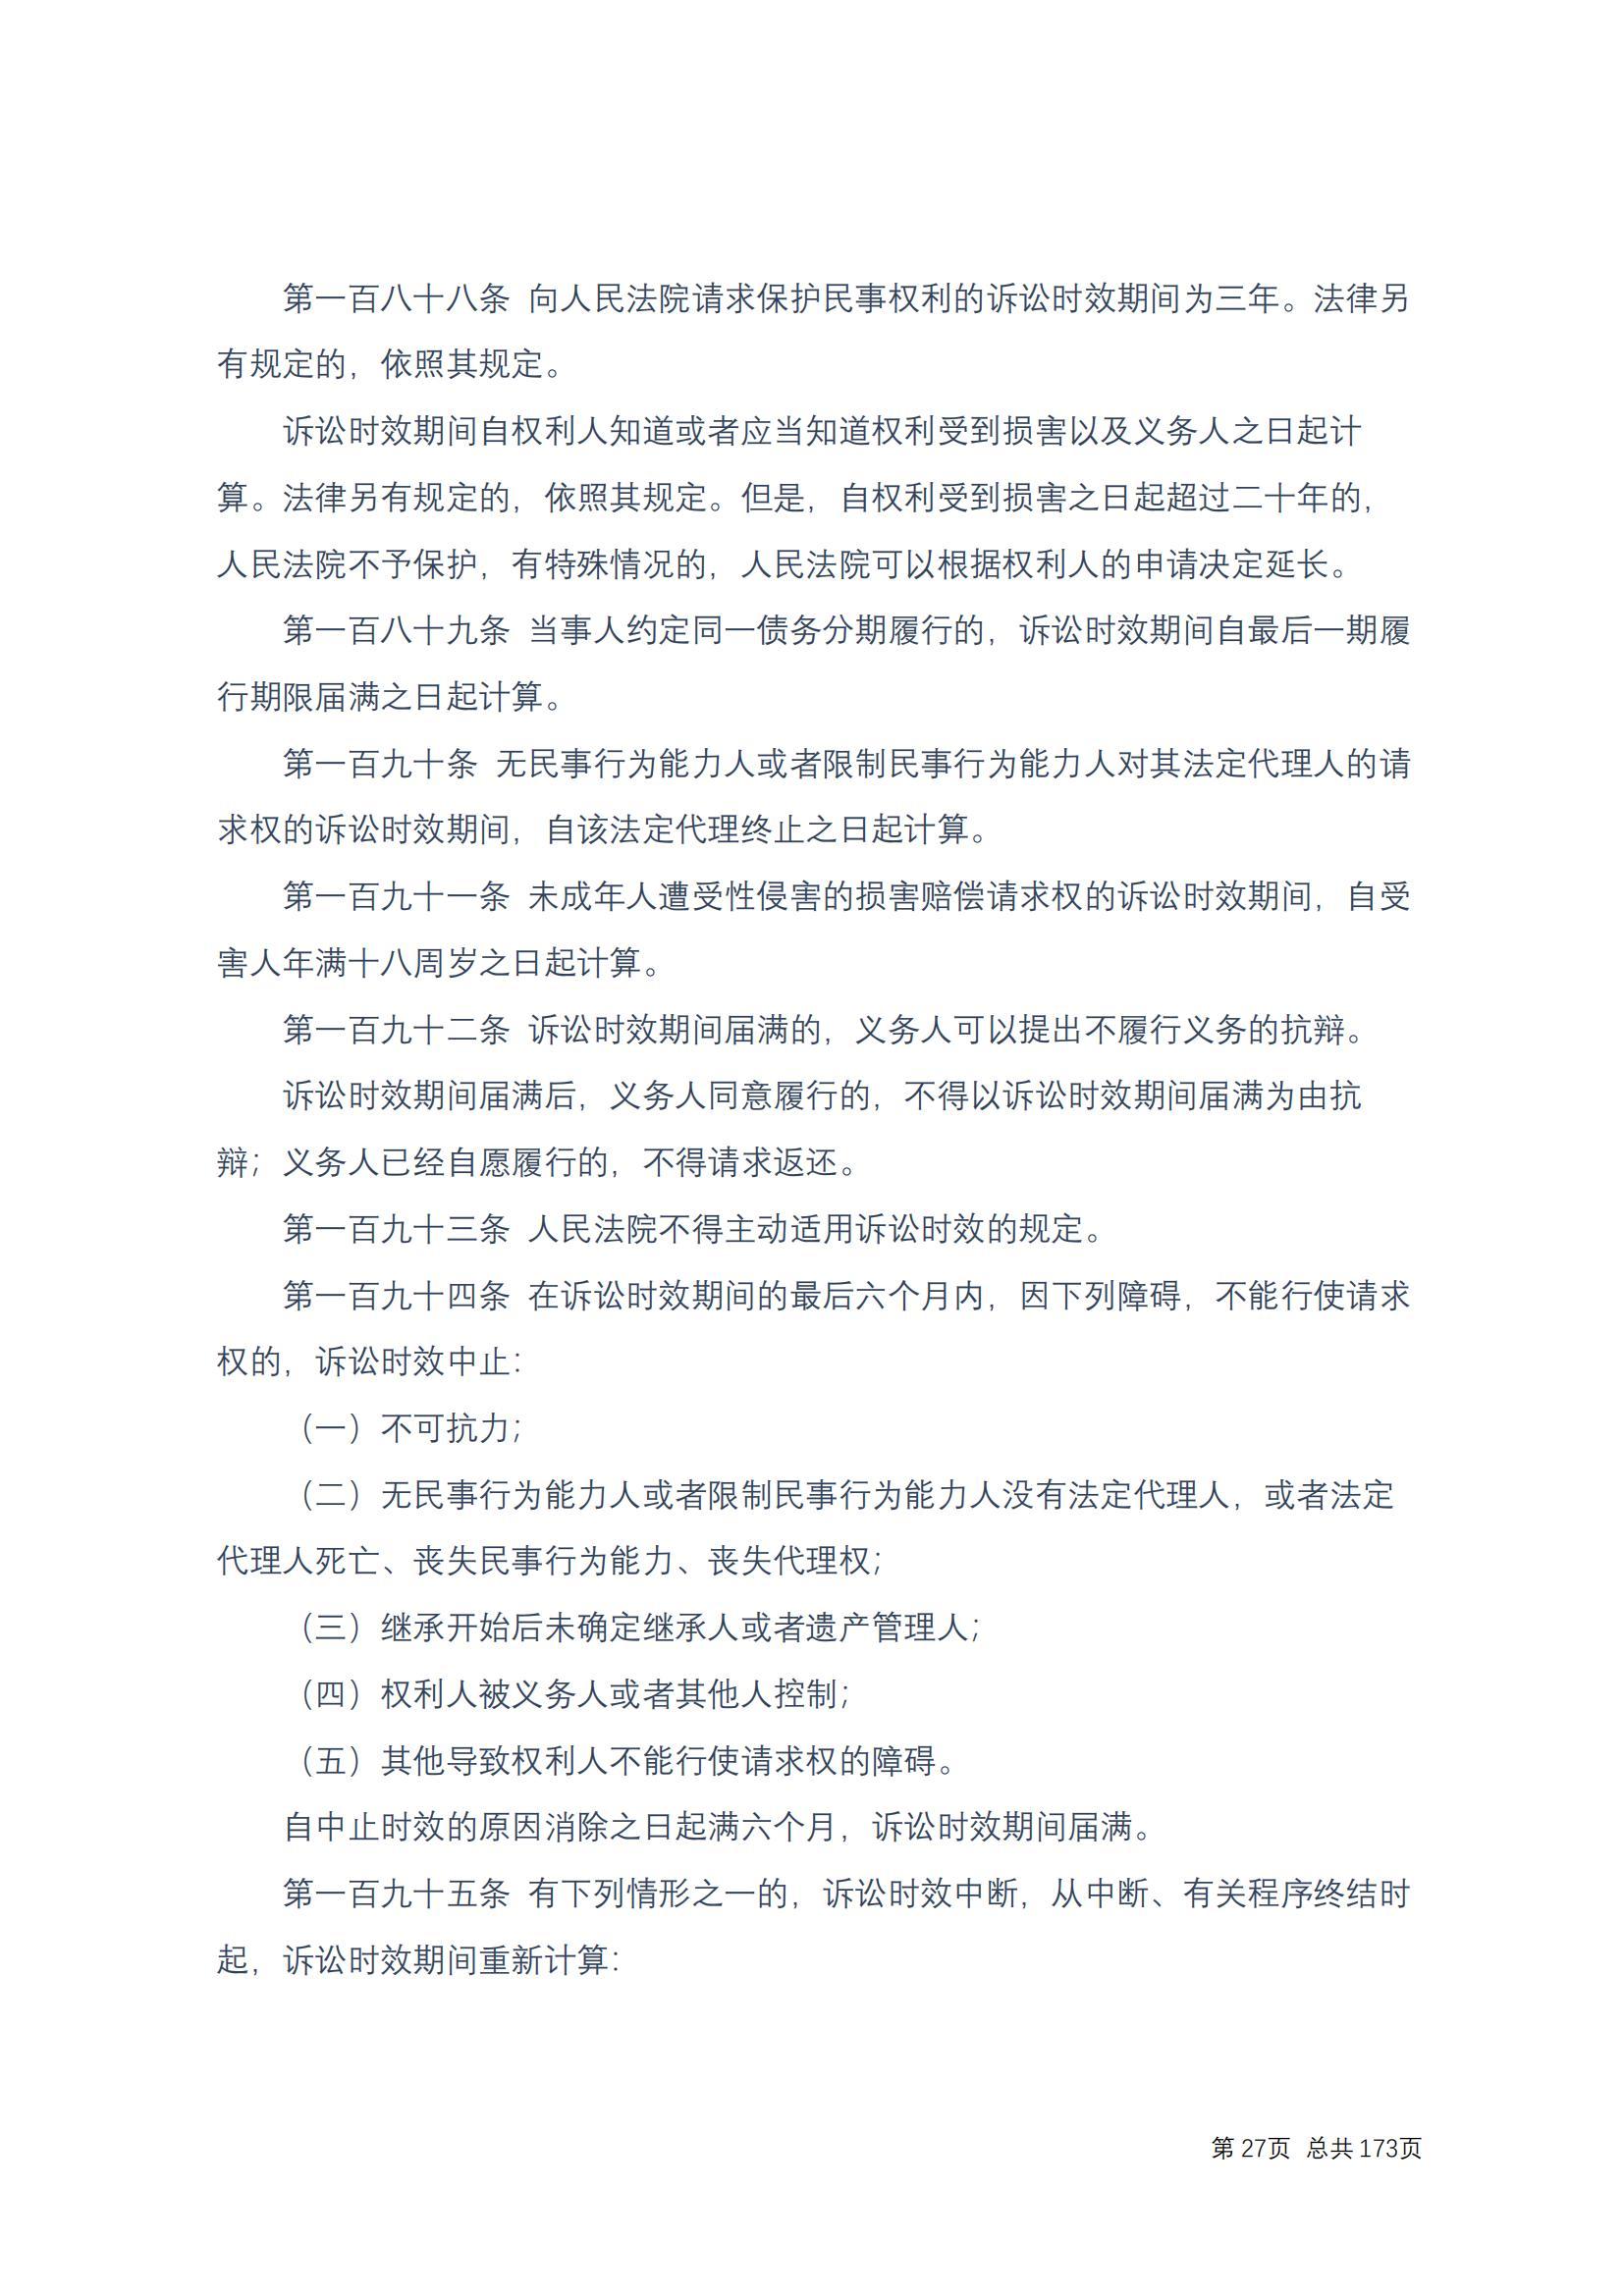 中华人民共和国民法典 修改过_26